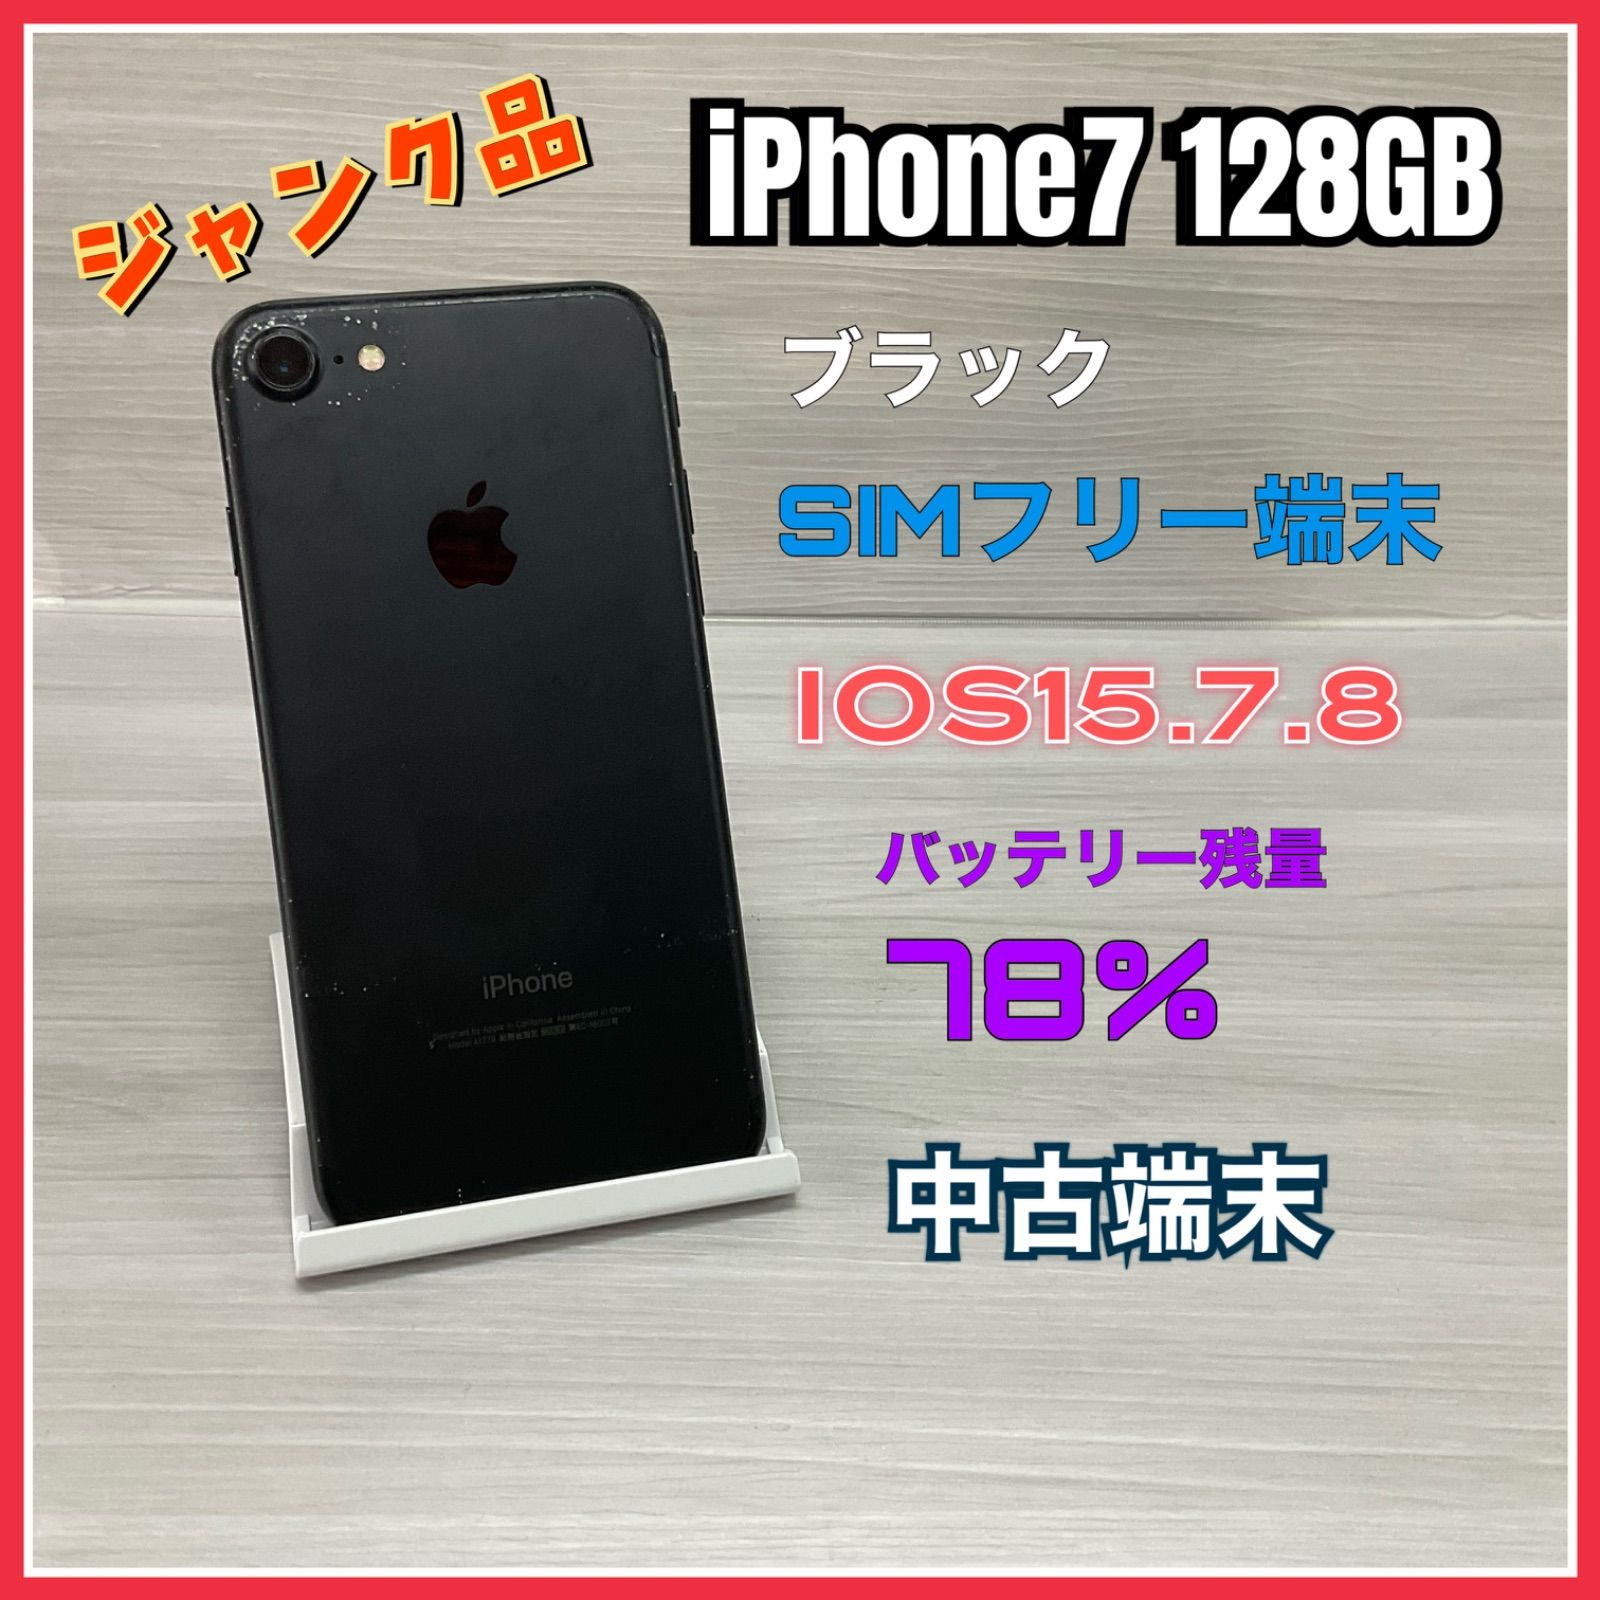 iPhone 7 128GB ブラック simフリー ジャンク品